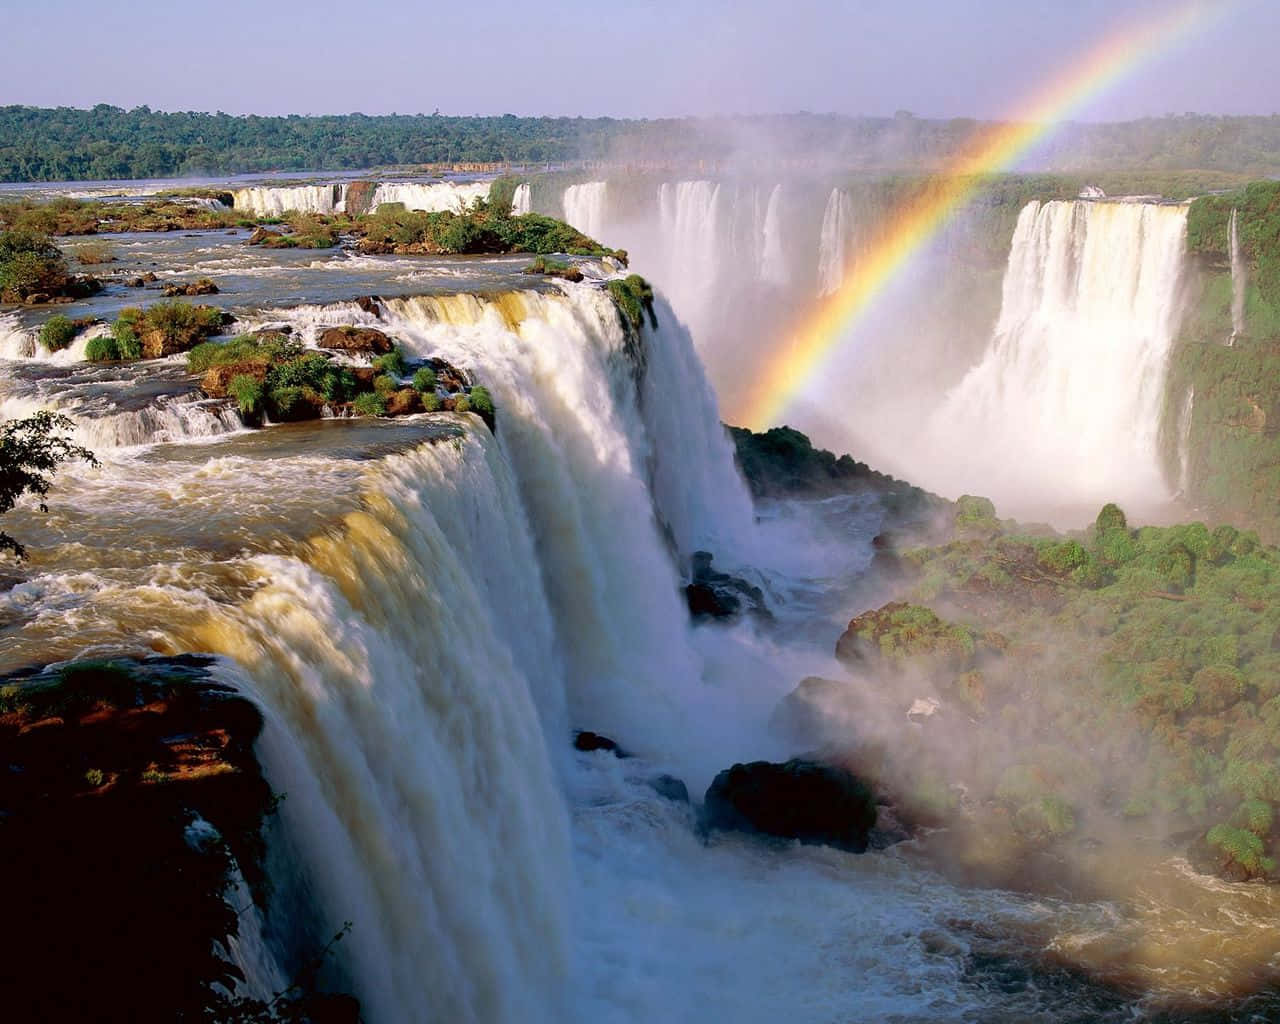 Iguazufalls Regnbåge. Wallpaper